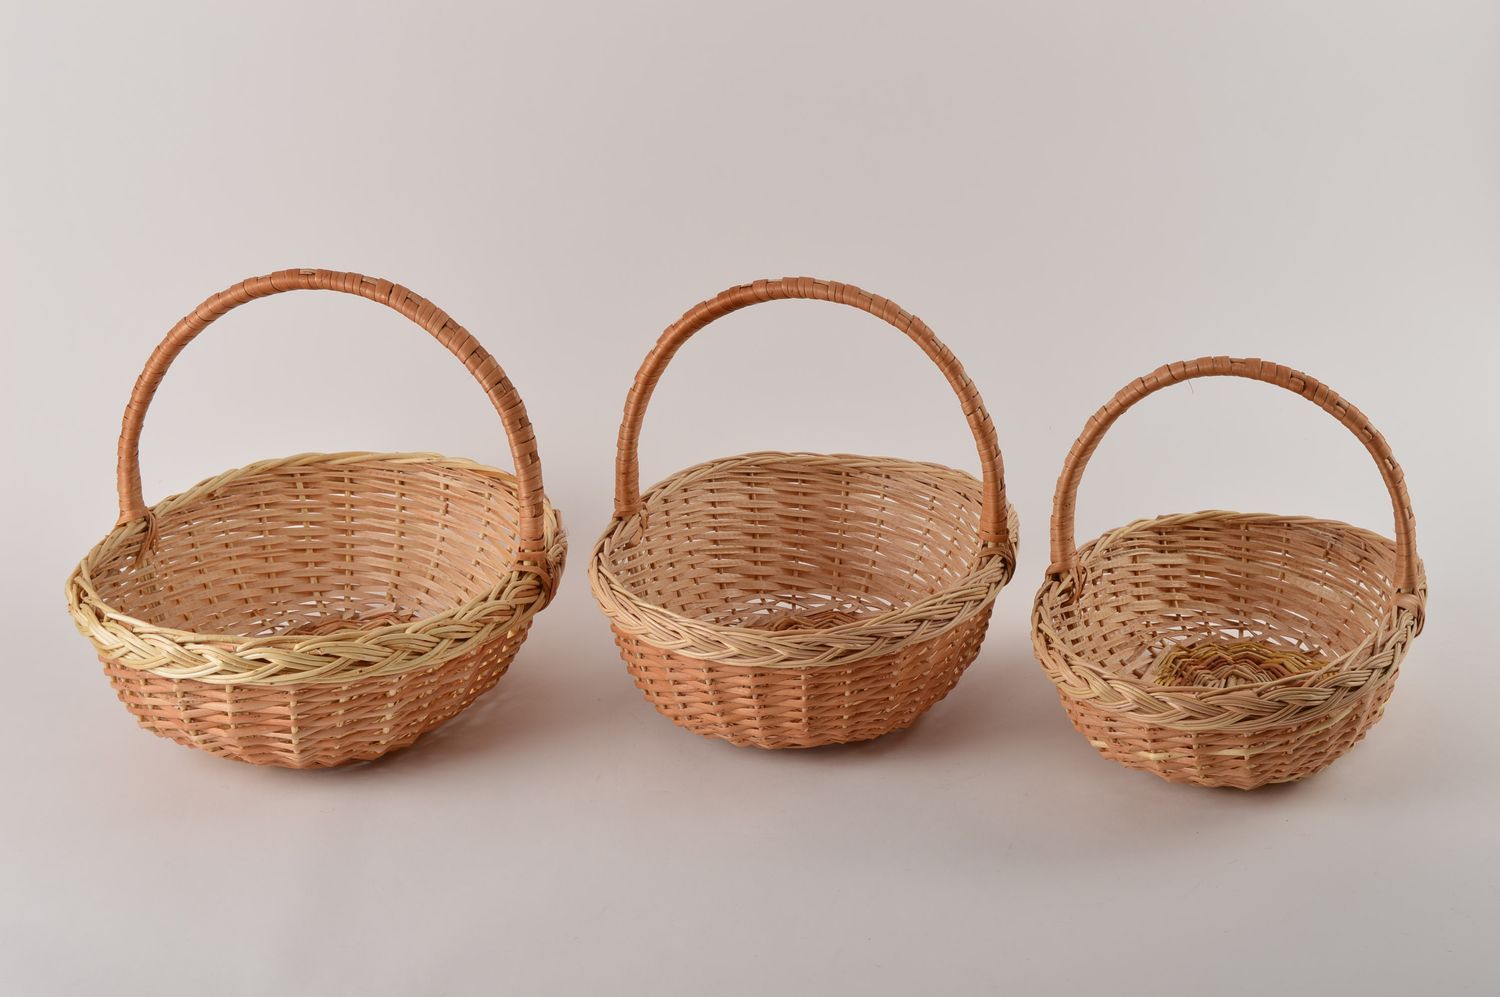 Плетеные корзины набор ручной работы изделия из лозы подарки женщинам 3 штуки фото 2